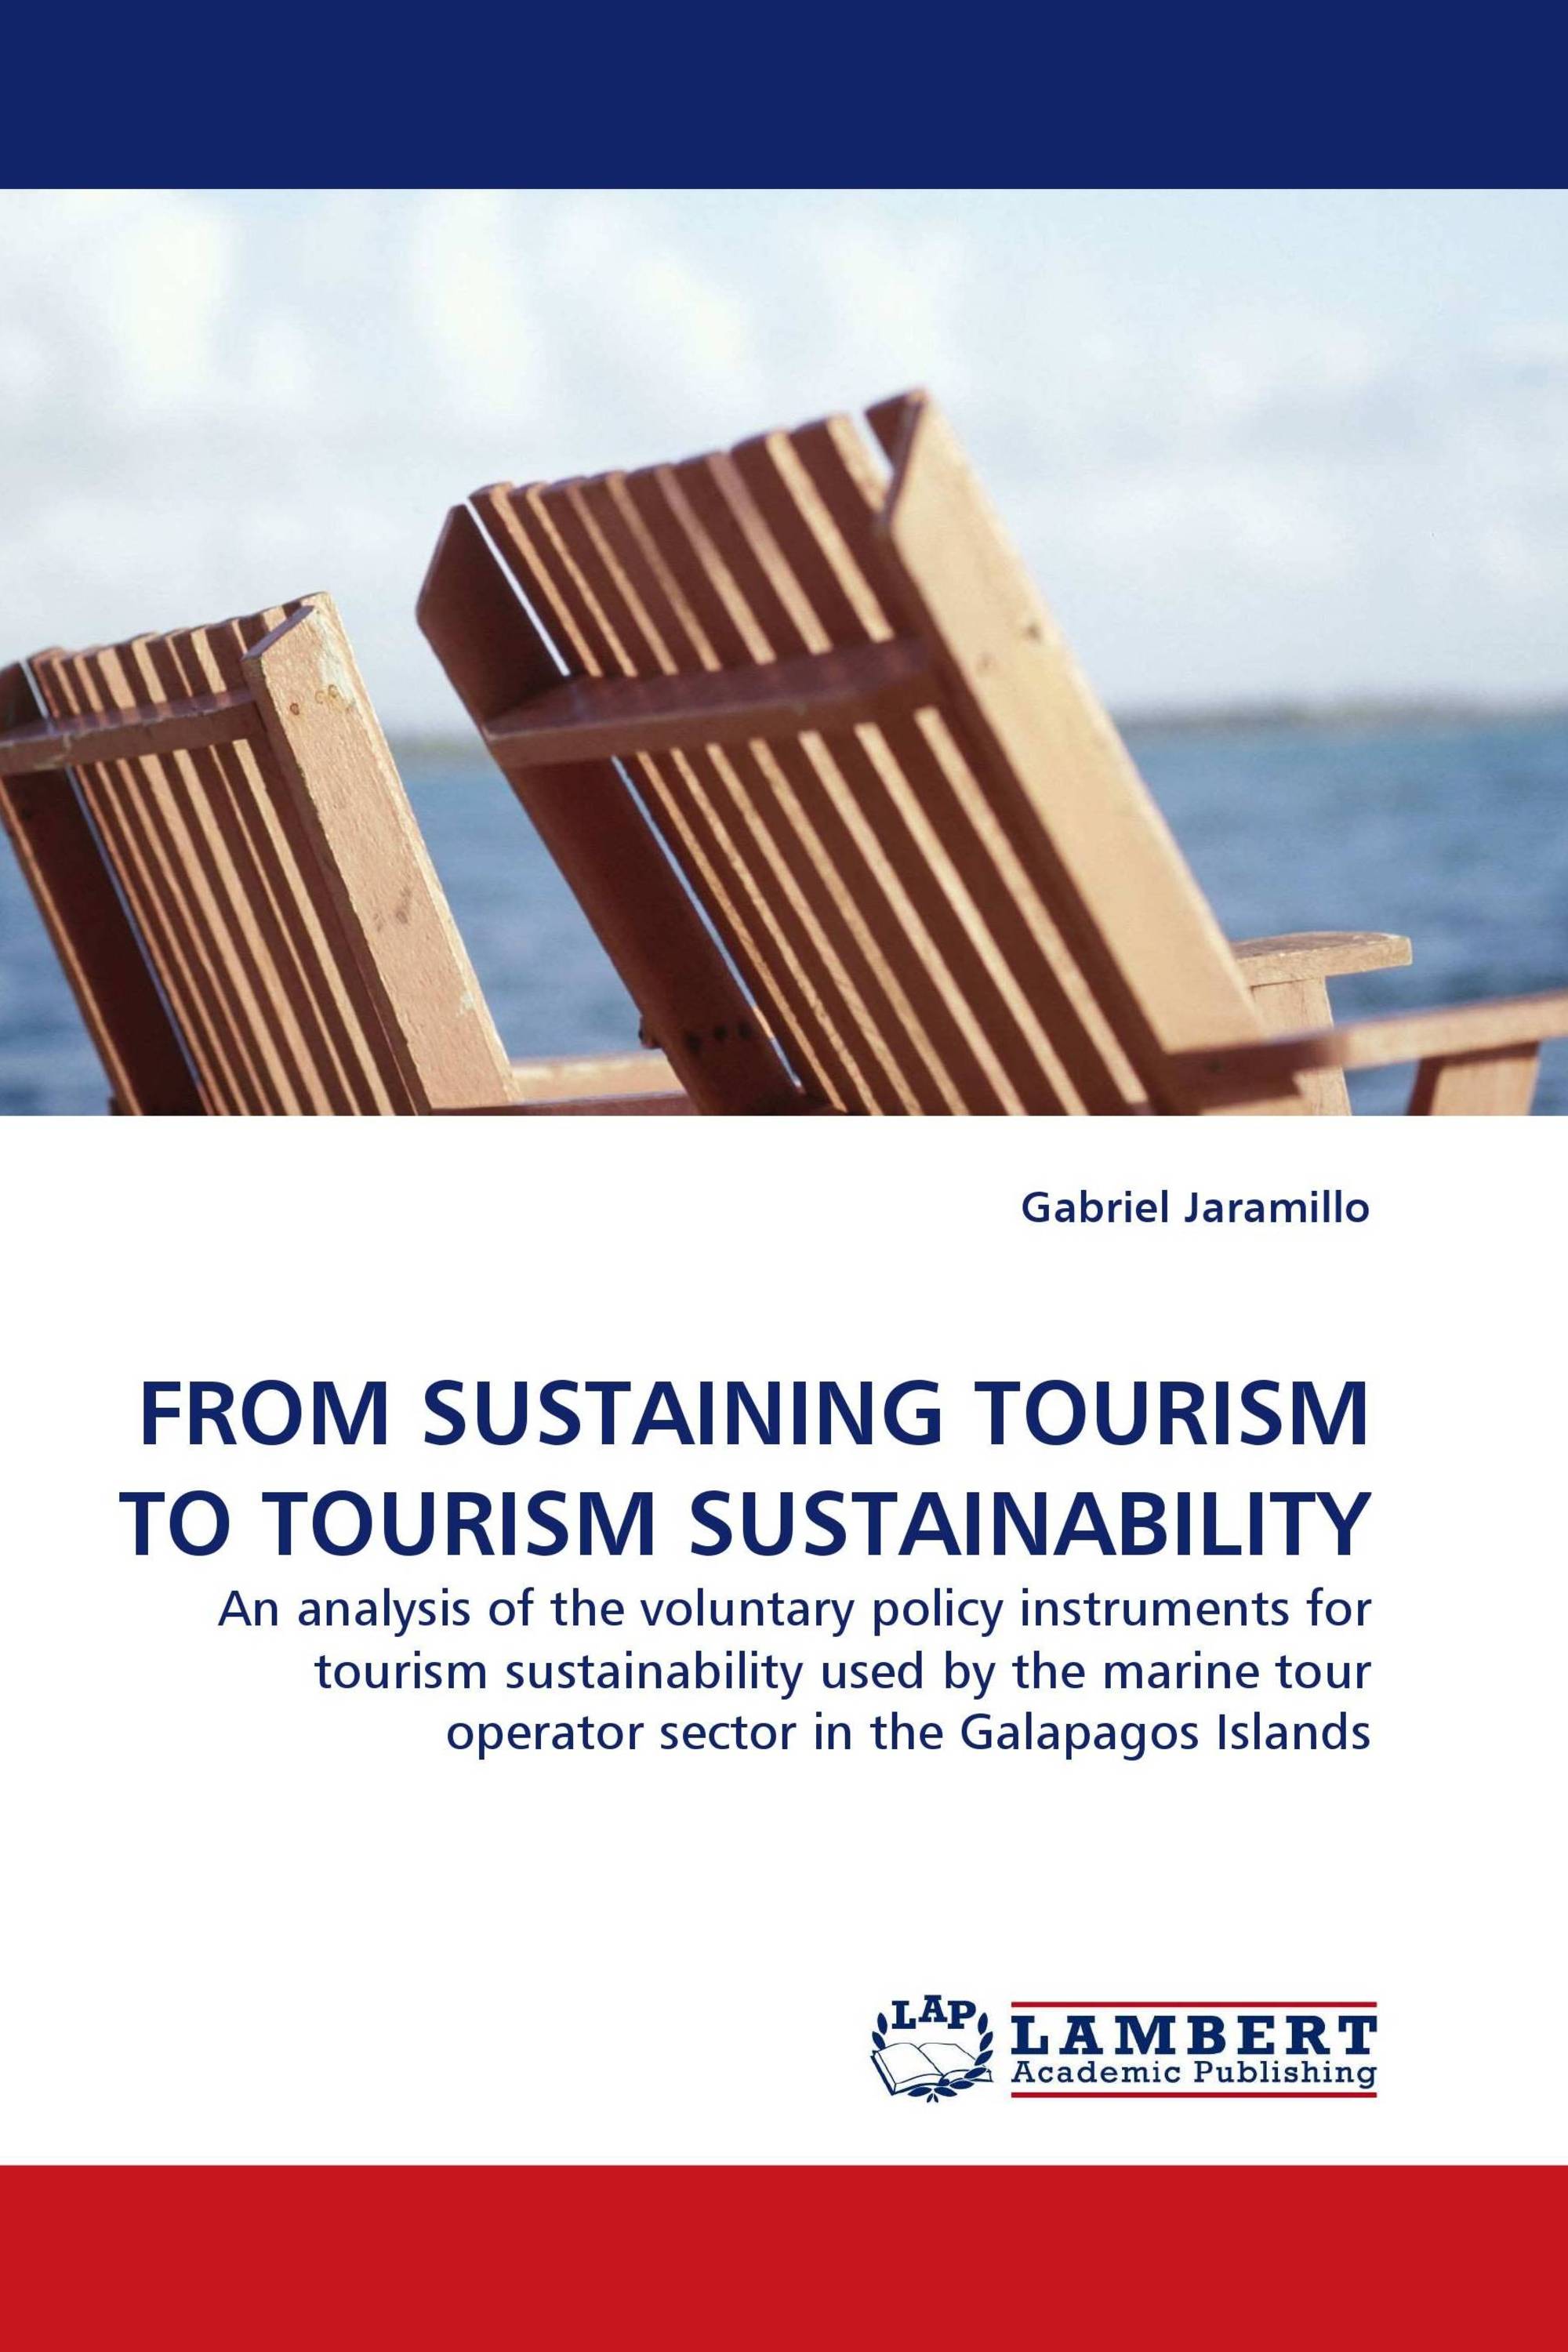 case study on tourism sustainability